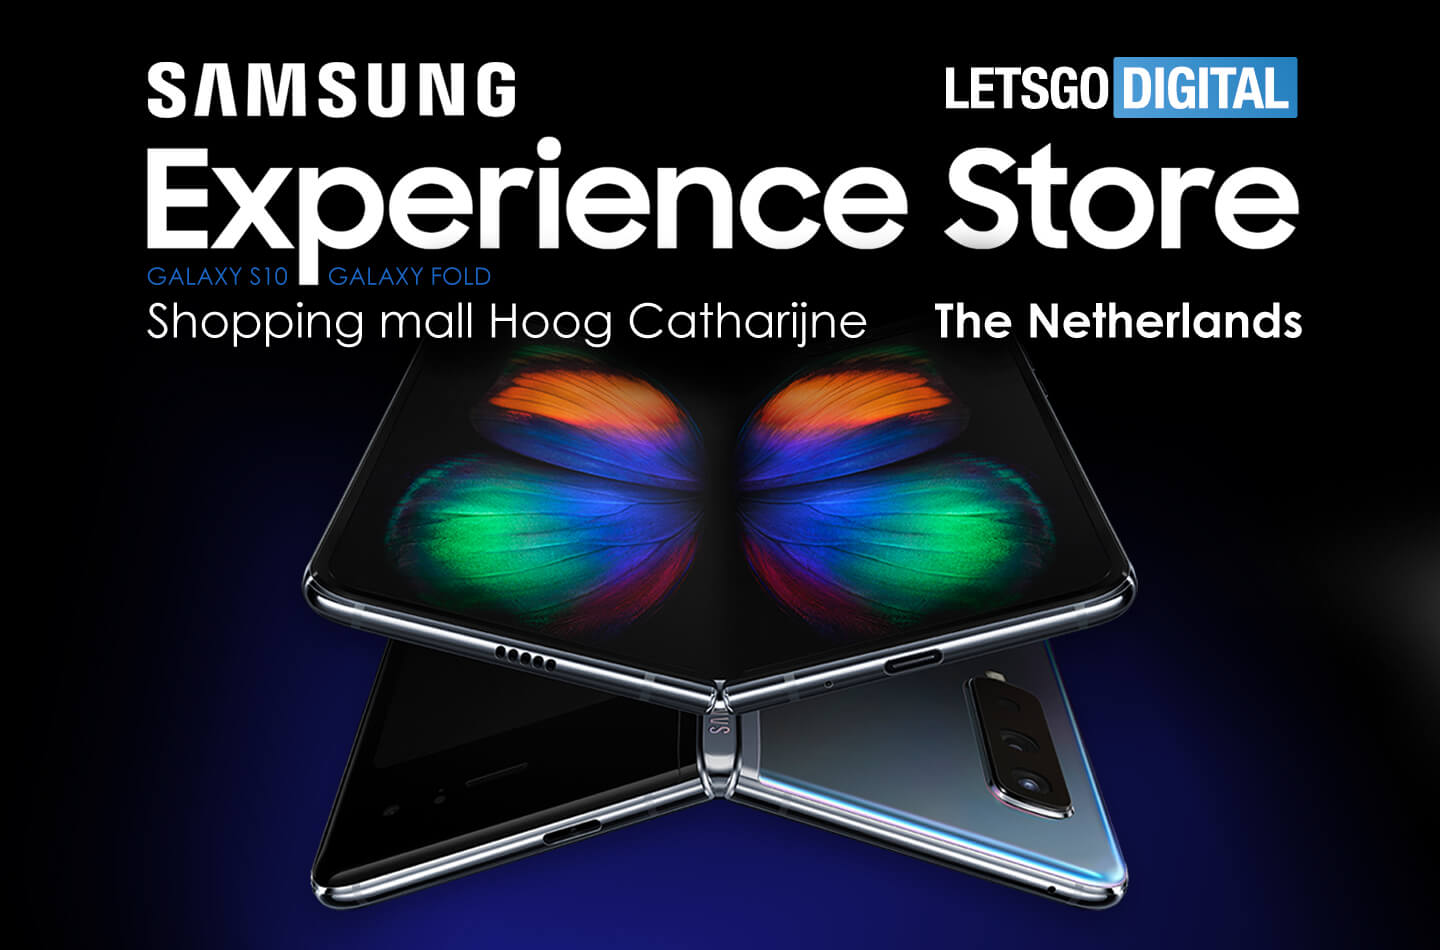 Samsung abre su primera Experience Store en los Países Bajos